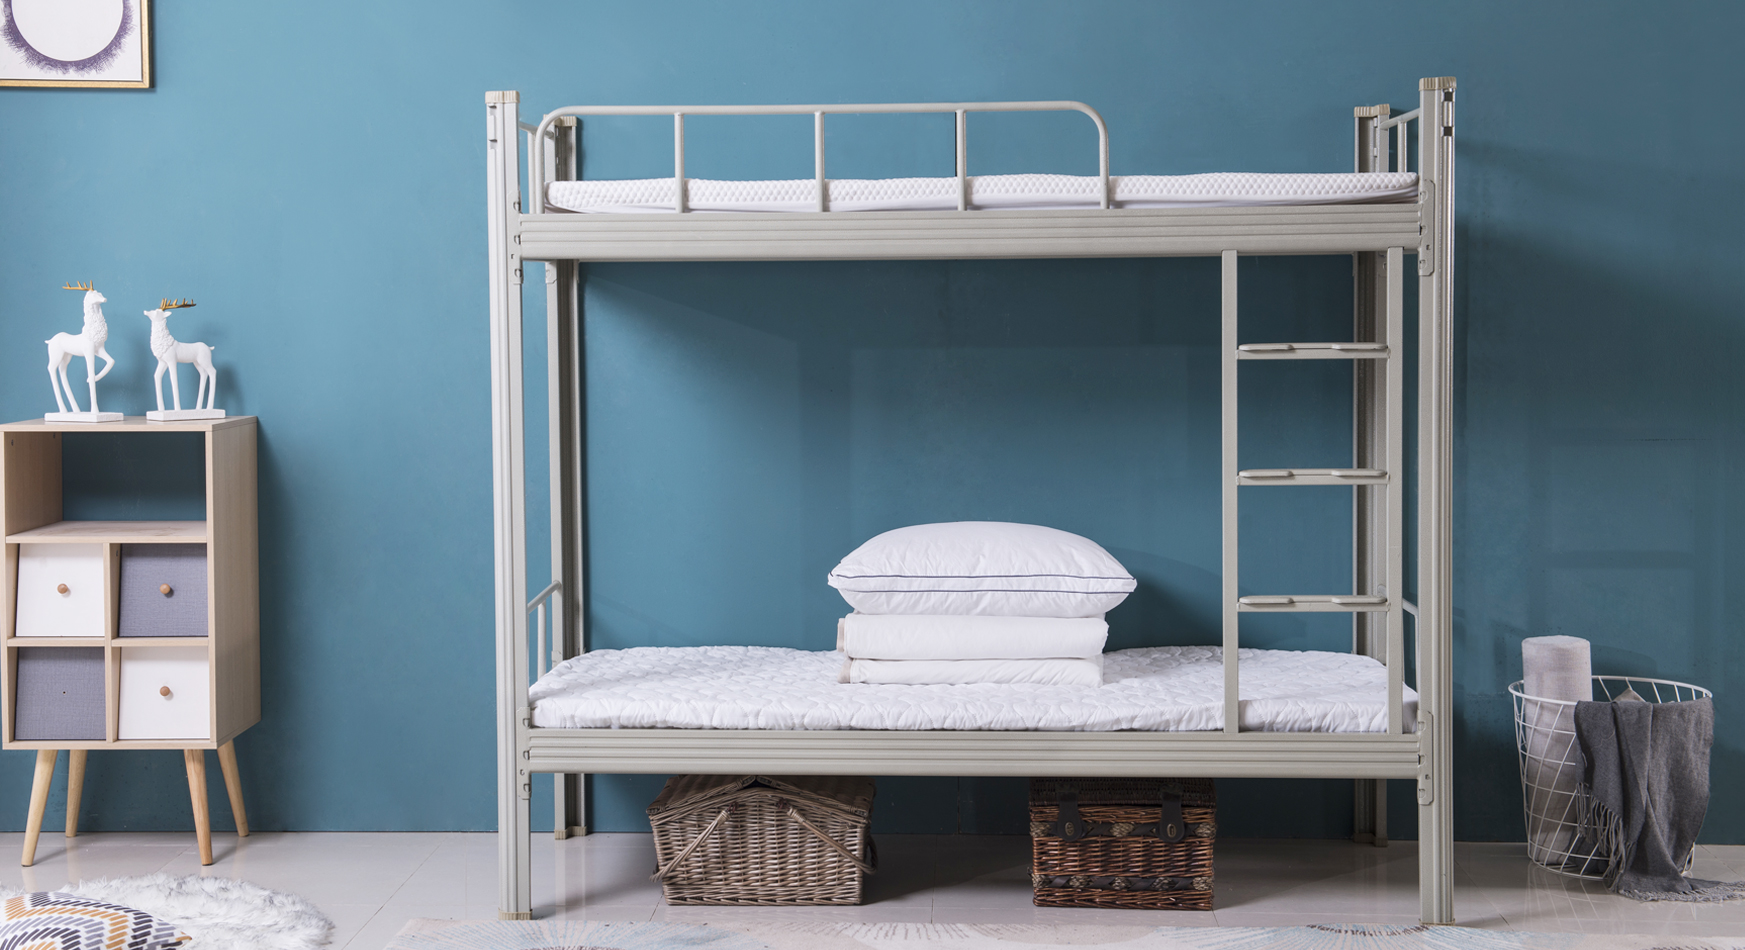 铁床双人床1.5米欧式铁艺床单人床公寓铁架床出租房床现代简约-阿里巴巴